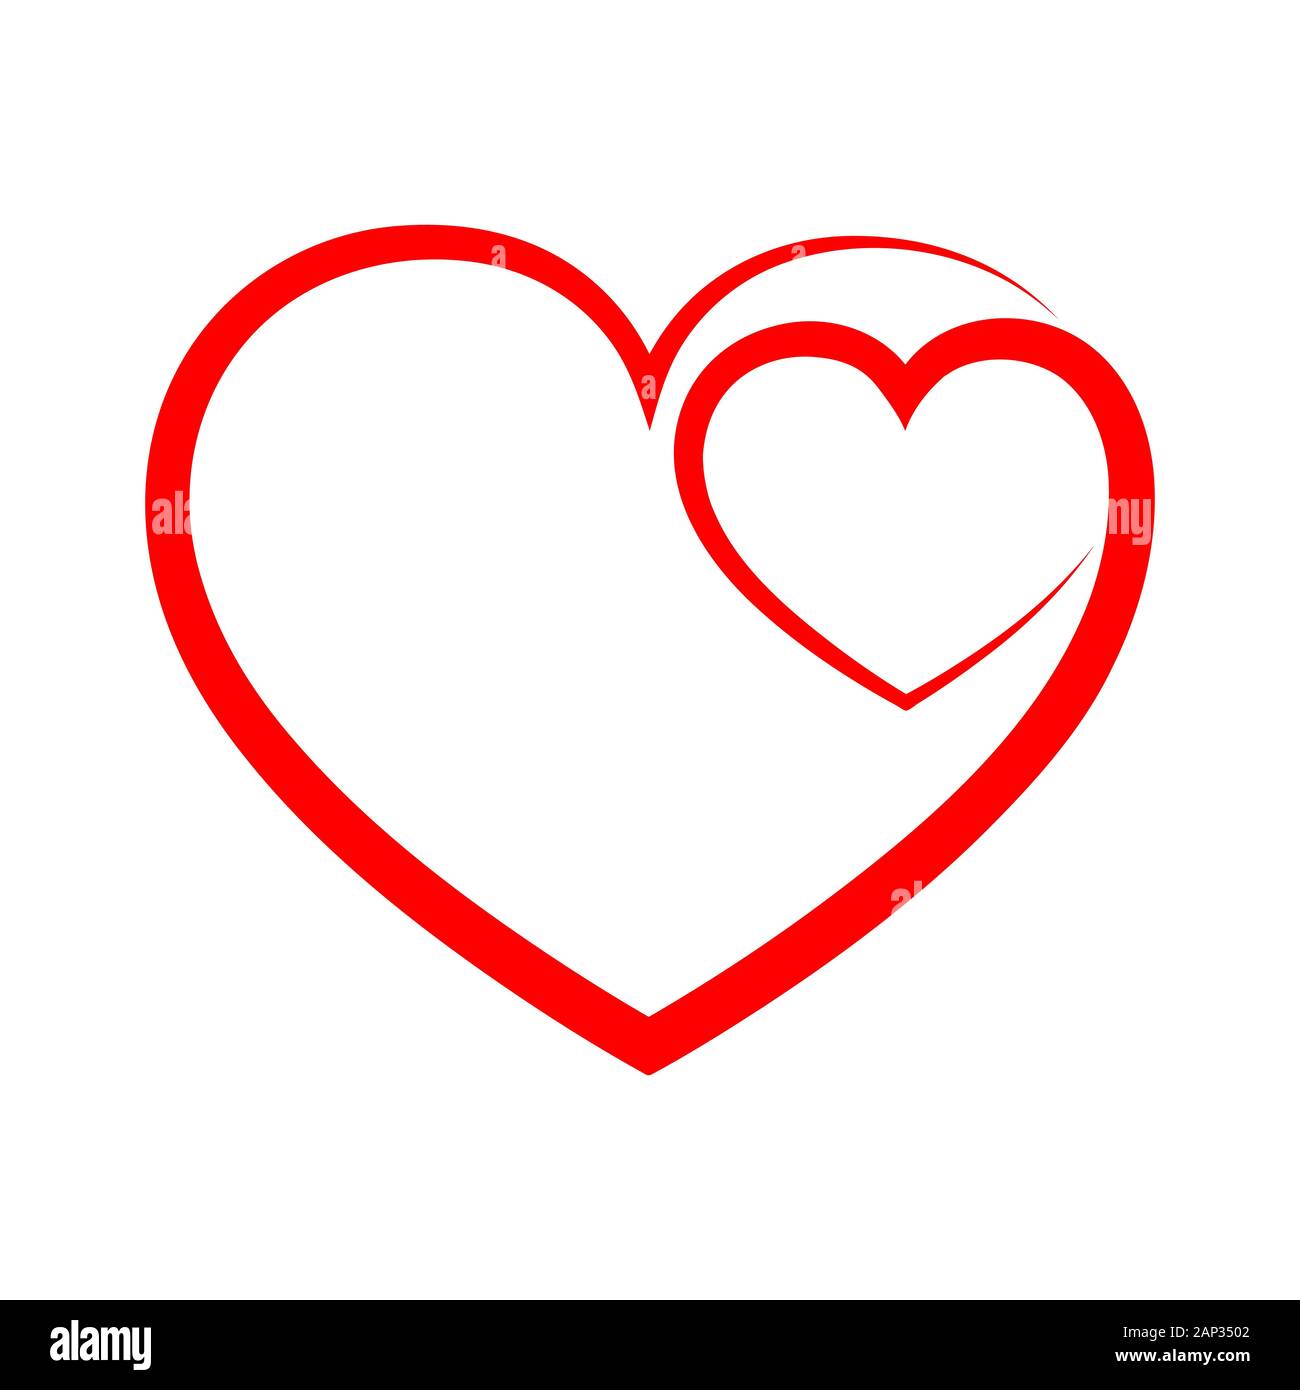 Résumé de contour de forme coeur. Vector illustration. Icône de cœur rouge en télévision style. Le coeur comme un symbole de l'amour. Illustration de Vecteur